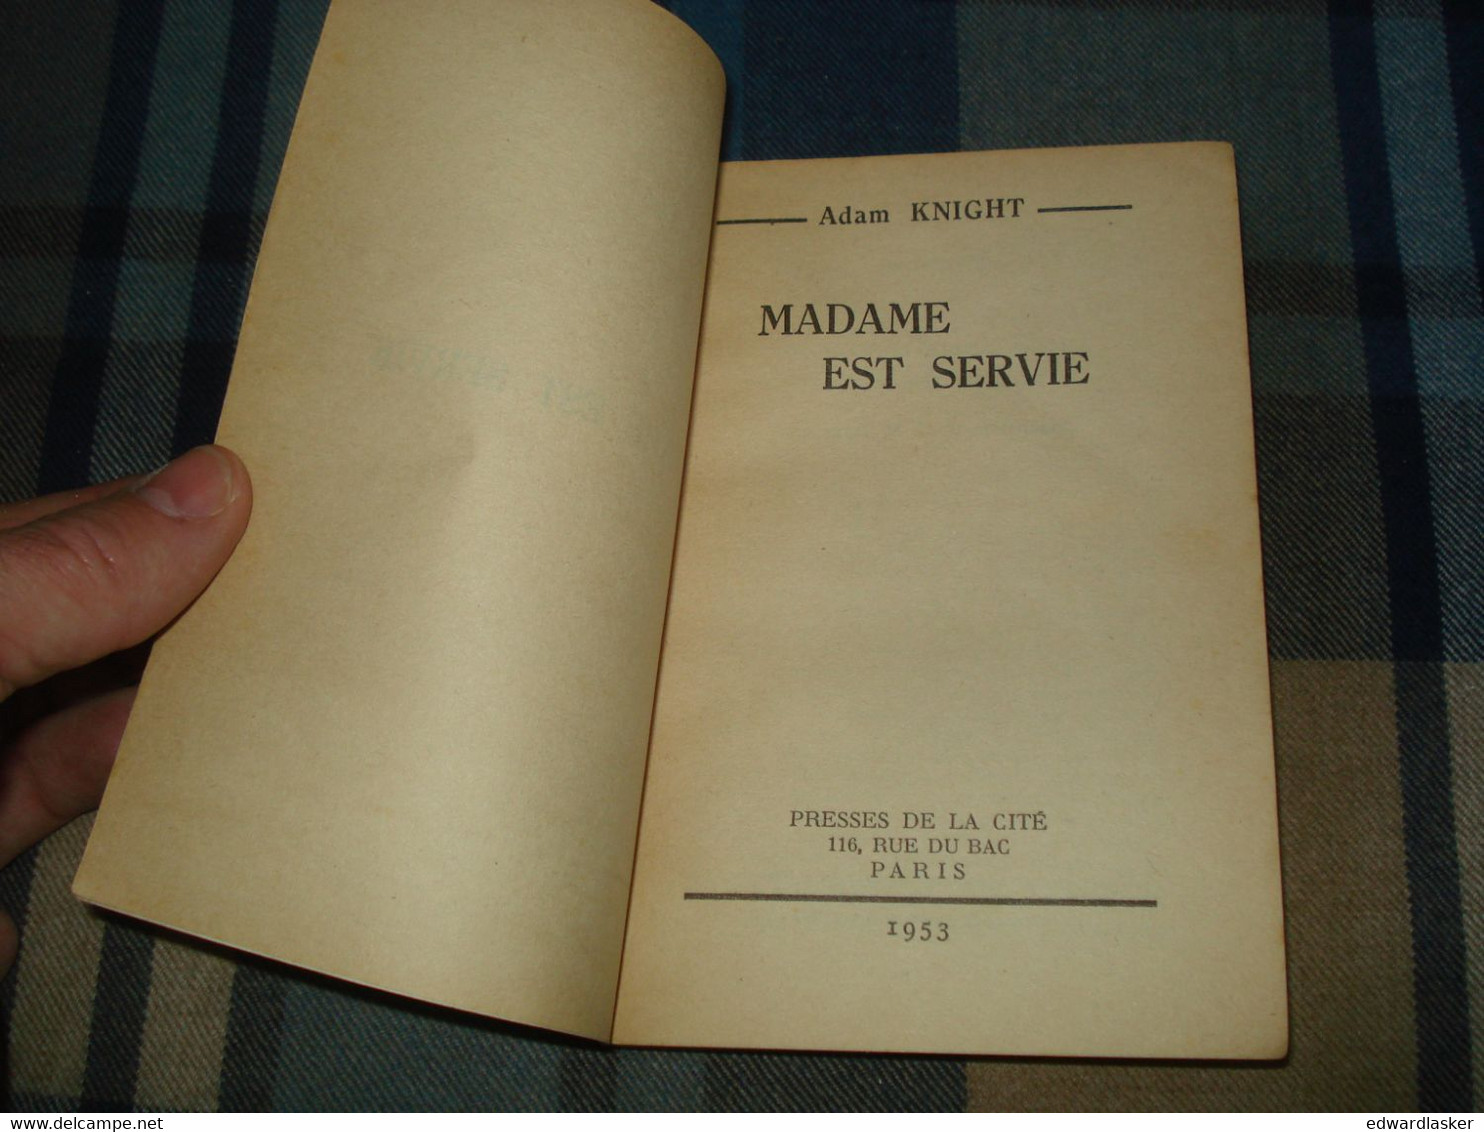 Un MYSTERE N°116 : MADAME Est SERVIE /Adam KNIGHT - Janvier 1953 - Presses De La Cité